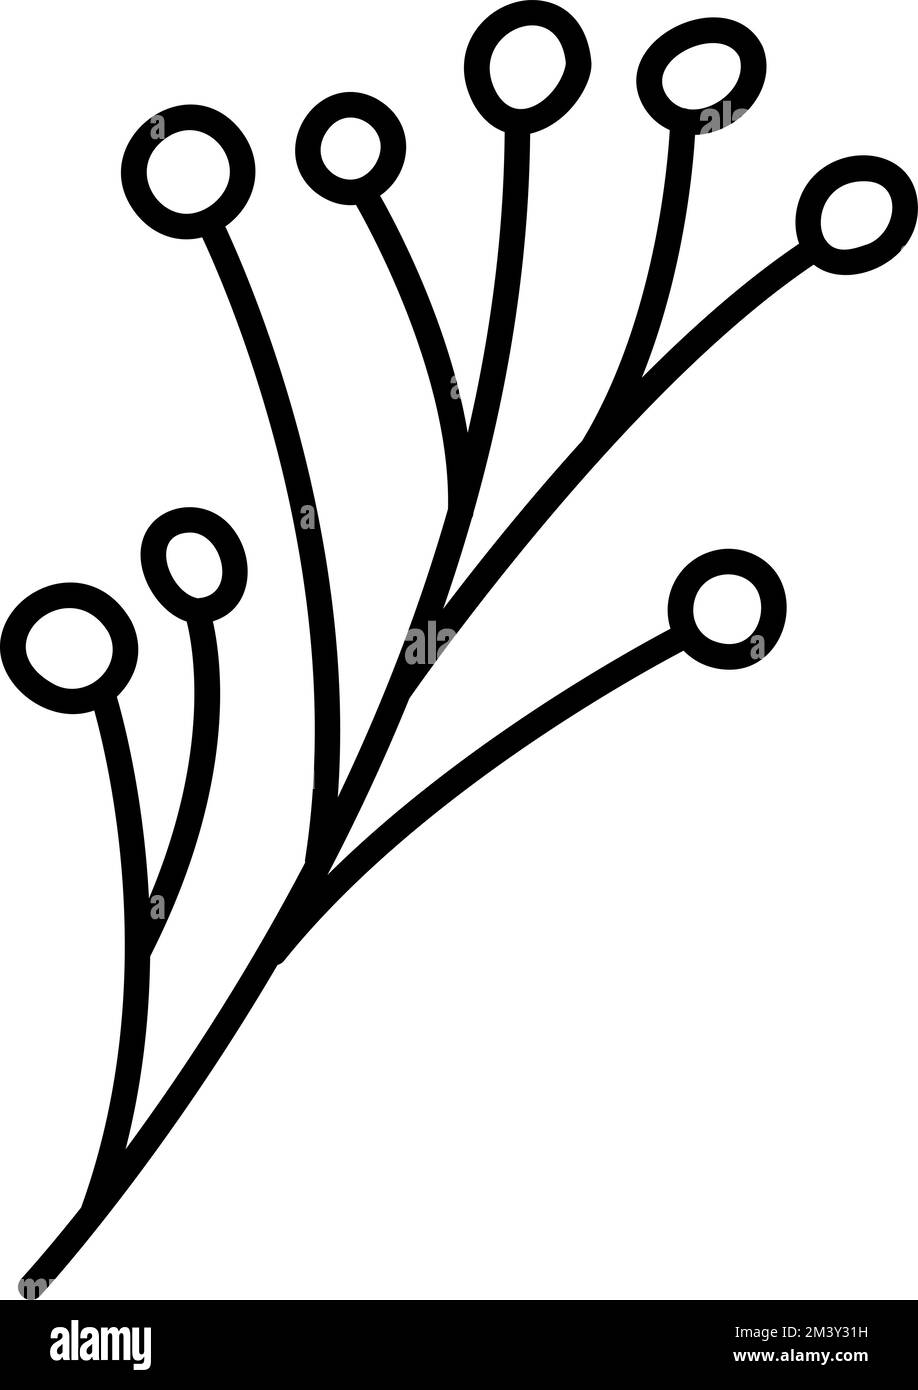 Frutti di bosco stilizzati Spring Vector con linee di monolina. Elemento grafico dell'illustrazione scandinavo. Immagine floreale estiva decorativa per il biglietto di auguri di San Valentino Illustrazione Vettoriale